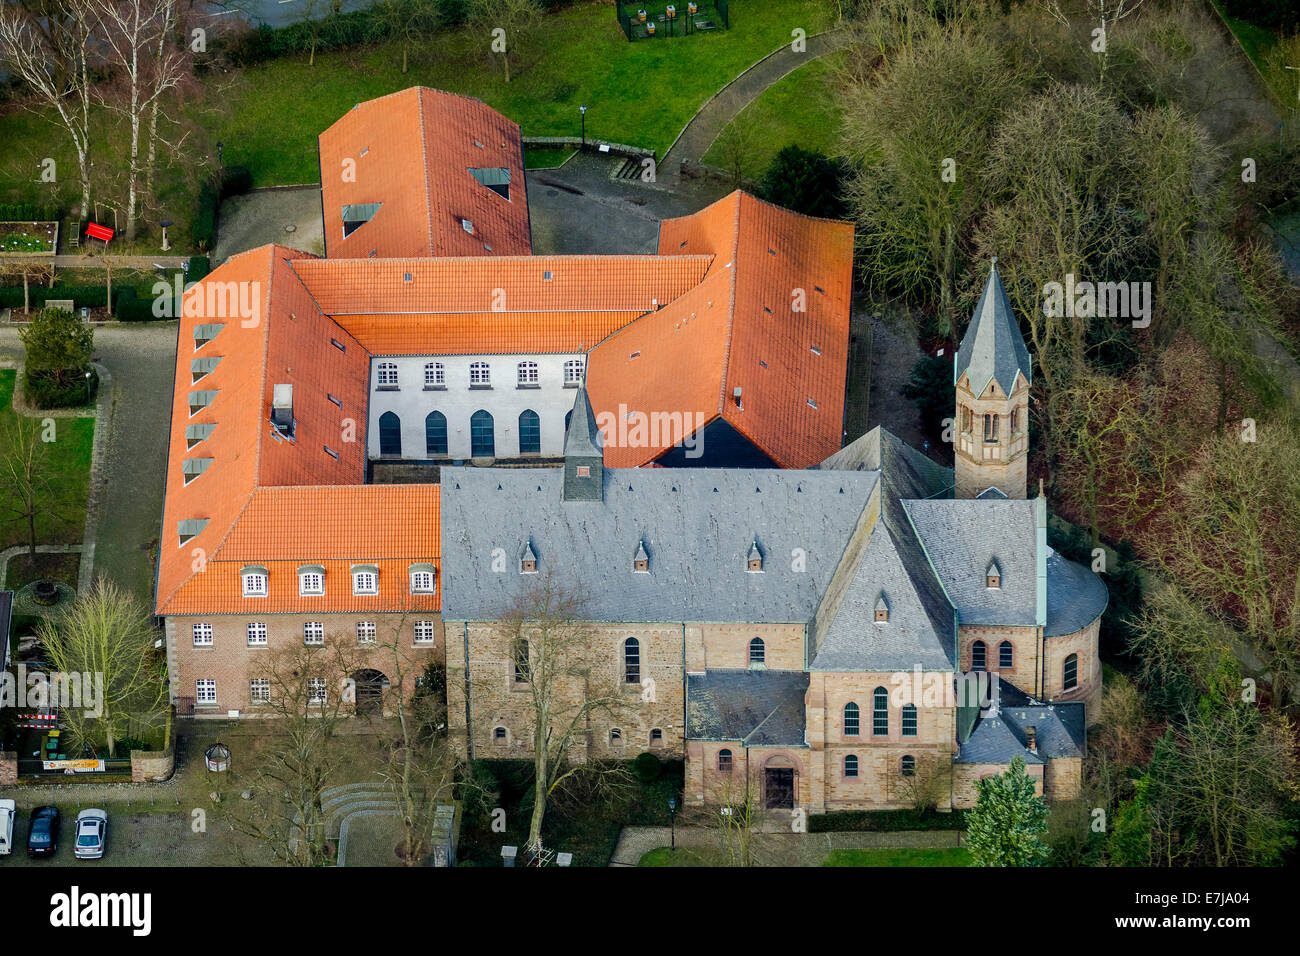 Vista aérea, Kloster Saarn convento, Saarn, Mülheim an der Ruhr, área de Ruhr, Renania del Norte-Westfalia, Alemania Foto de stock